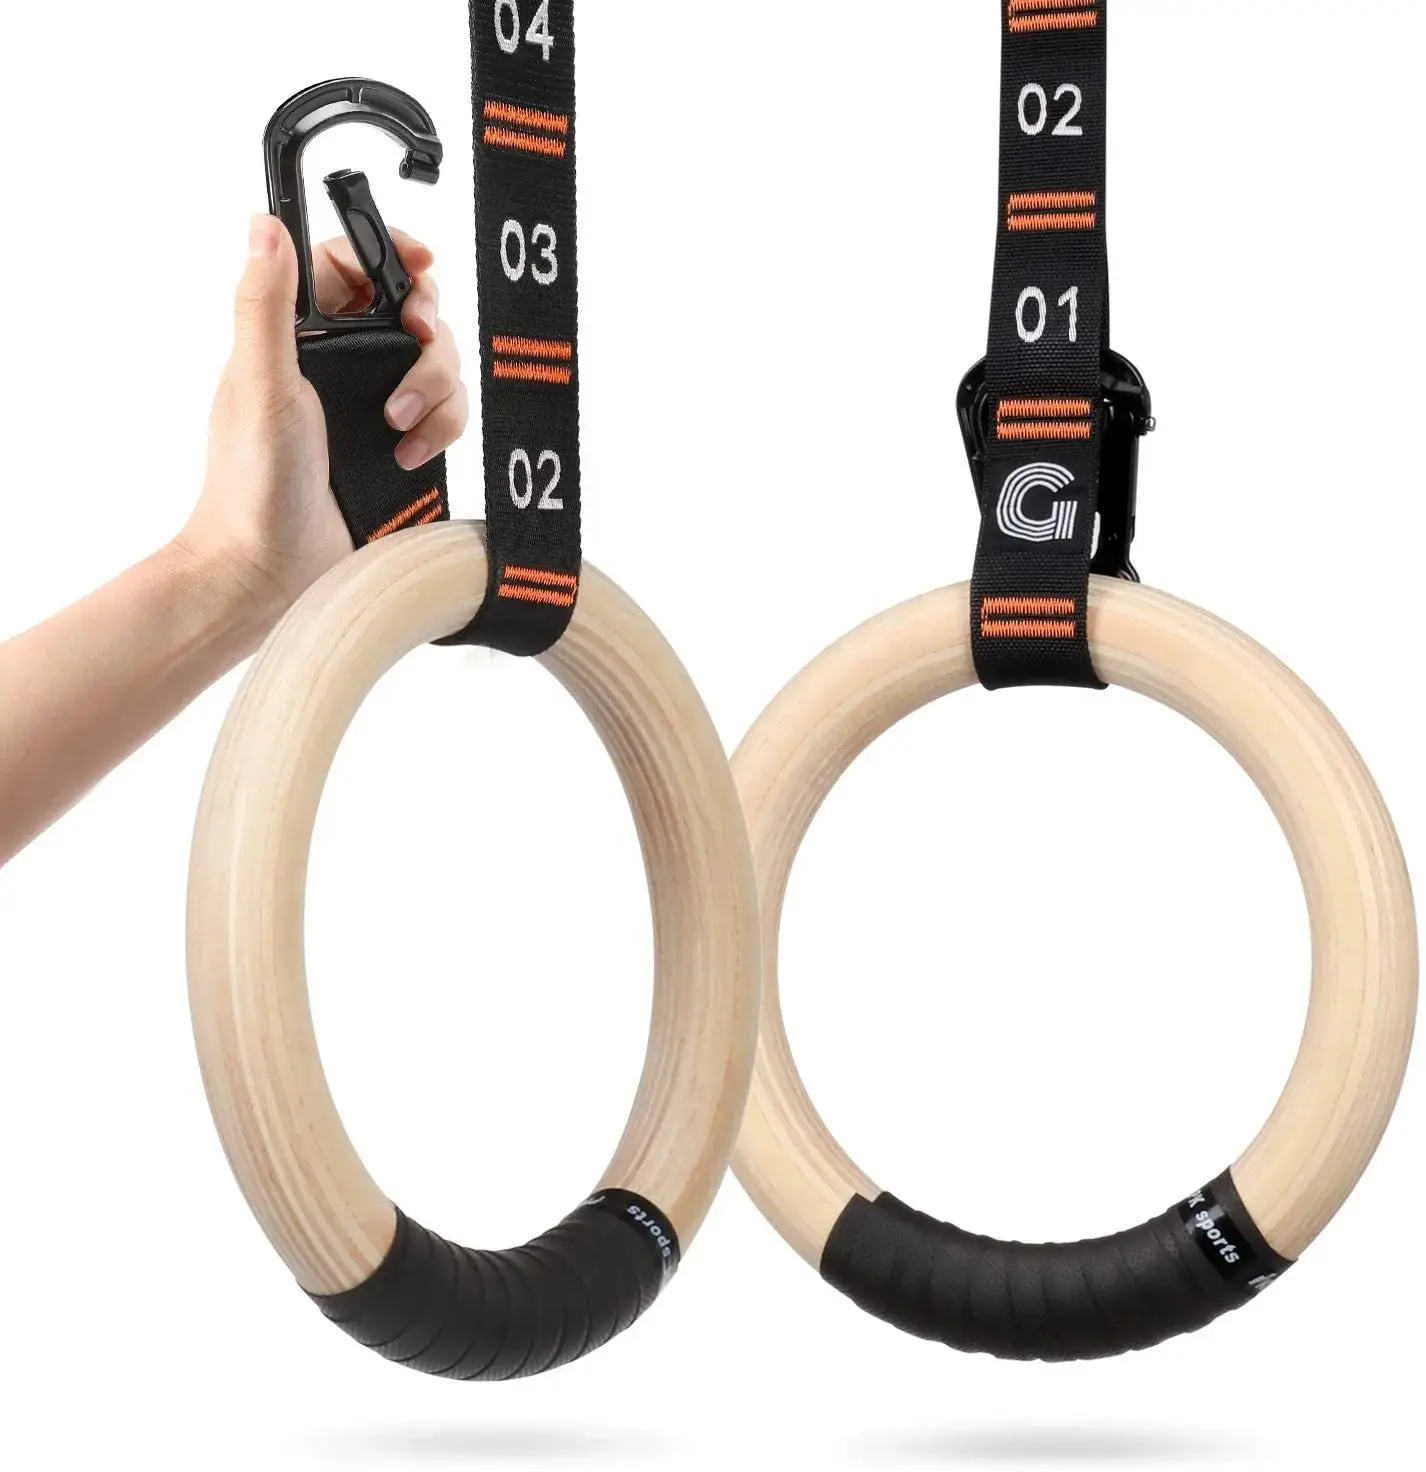 ZJFIT all'ingrosso su misura vendite calde all'ingrosso e di alta qualità in legno ginnastica anello cinturino regolabile sollevamento anti slip loop